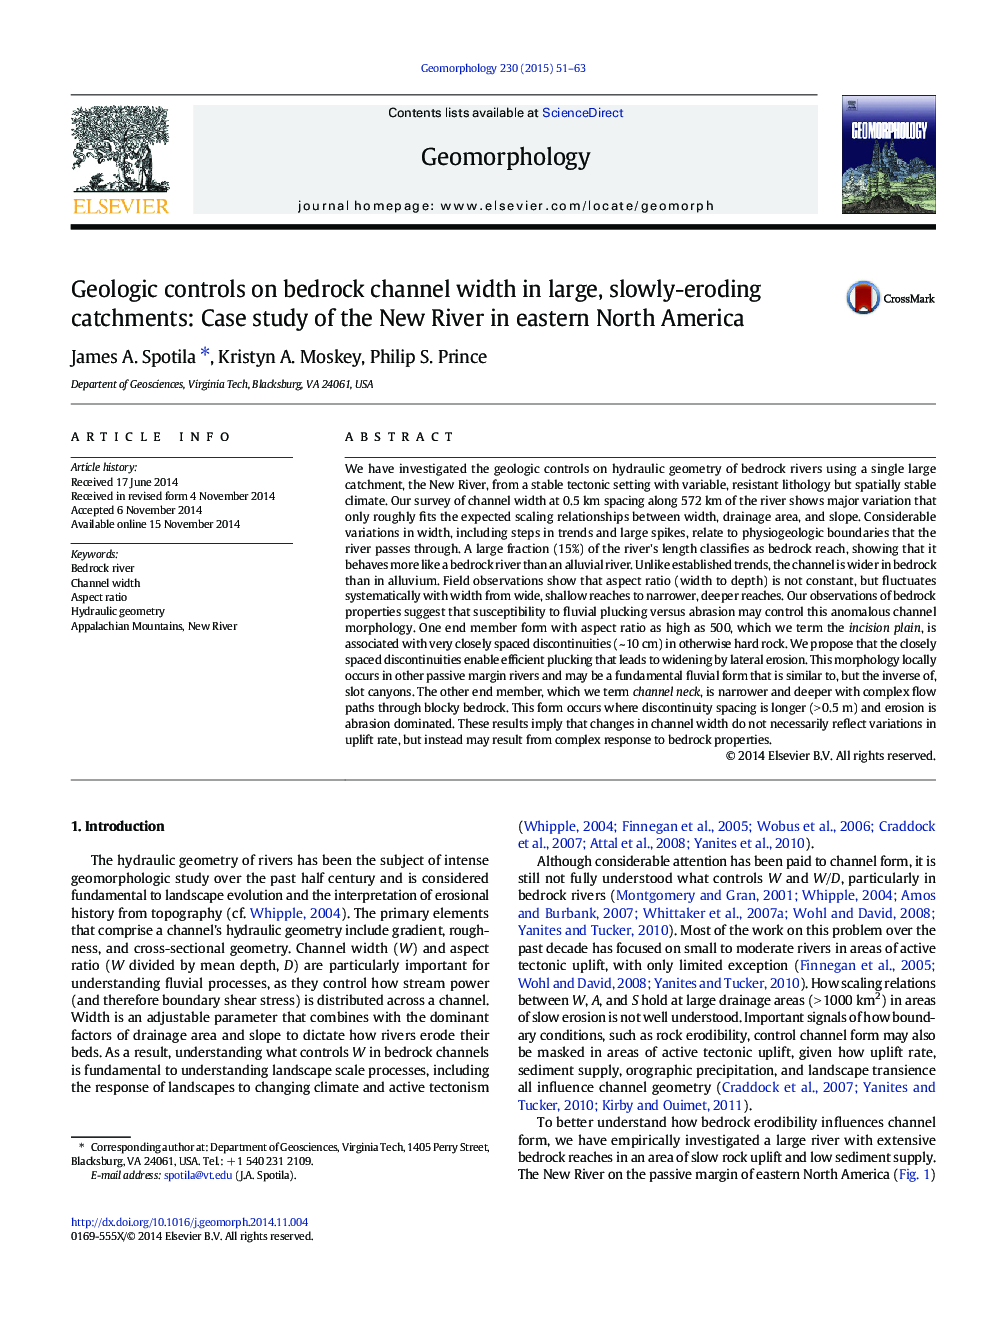 کنترل زمین شناسی بر روی پهنه کانال بستر در حوضه های بزرگ و آهسته تخریب: مطالعه موردی رودخانه نیویورک در شرق آمریکای شمالی 